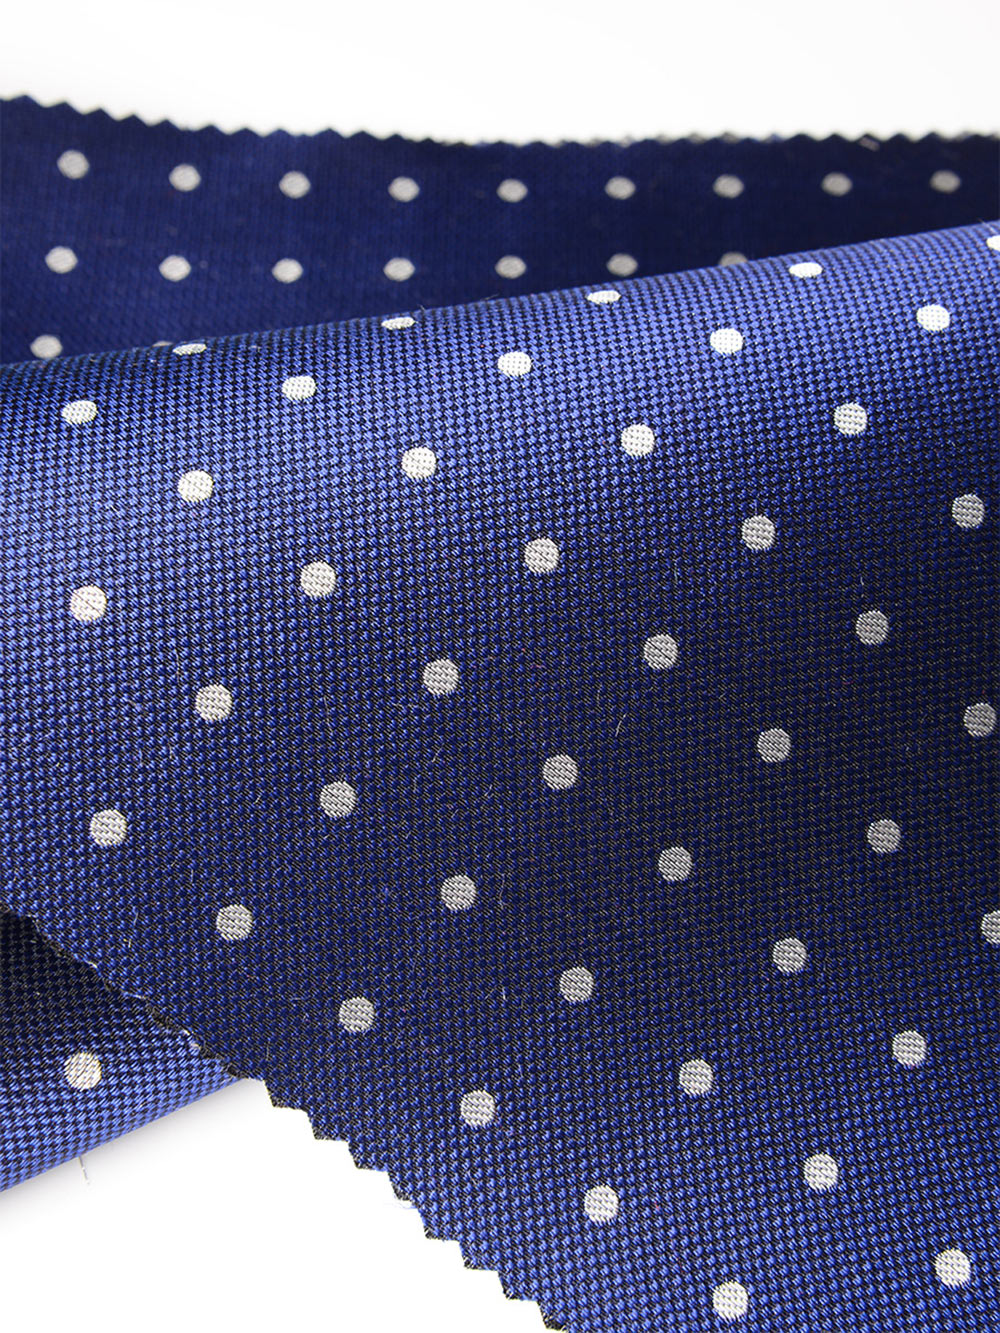 S-602 Yamanashi Fujiyoshida Dot Pattern Formal Textile Blue Yamamoto(EXCY)